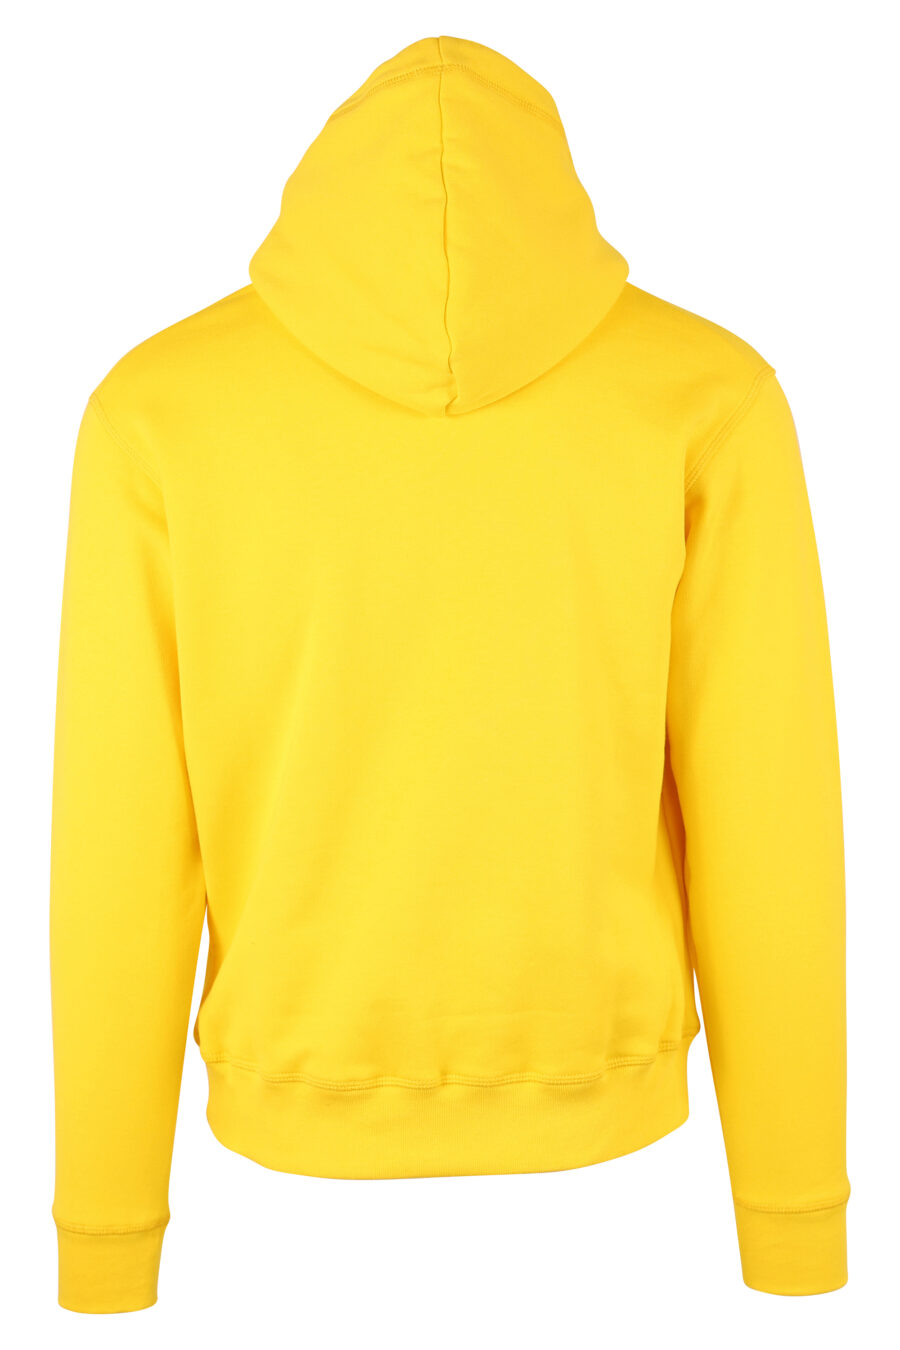 Sweat à capuche jaune avec double logo "icon" - IMG 9737